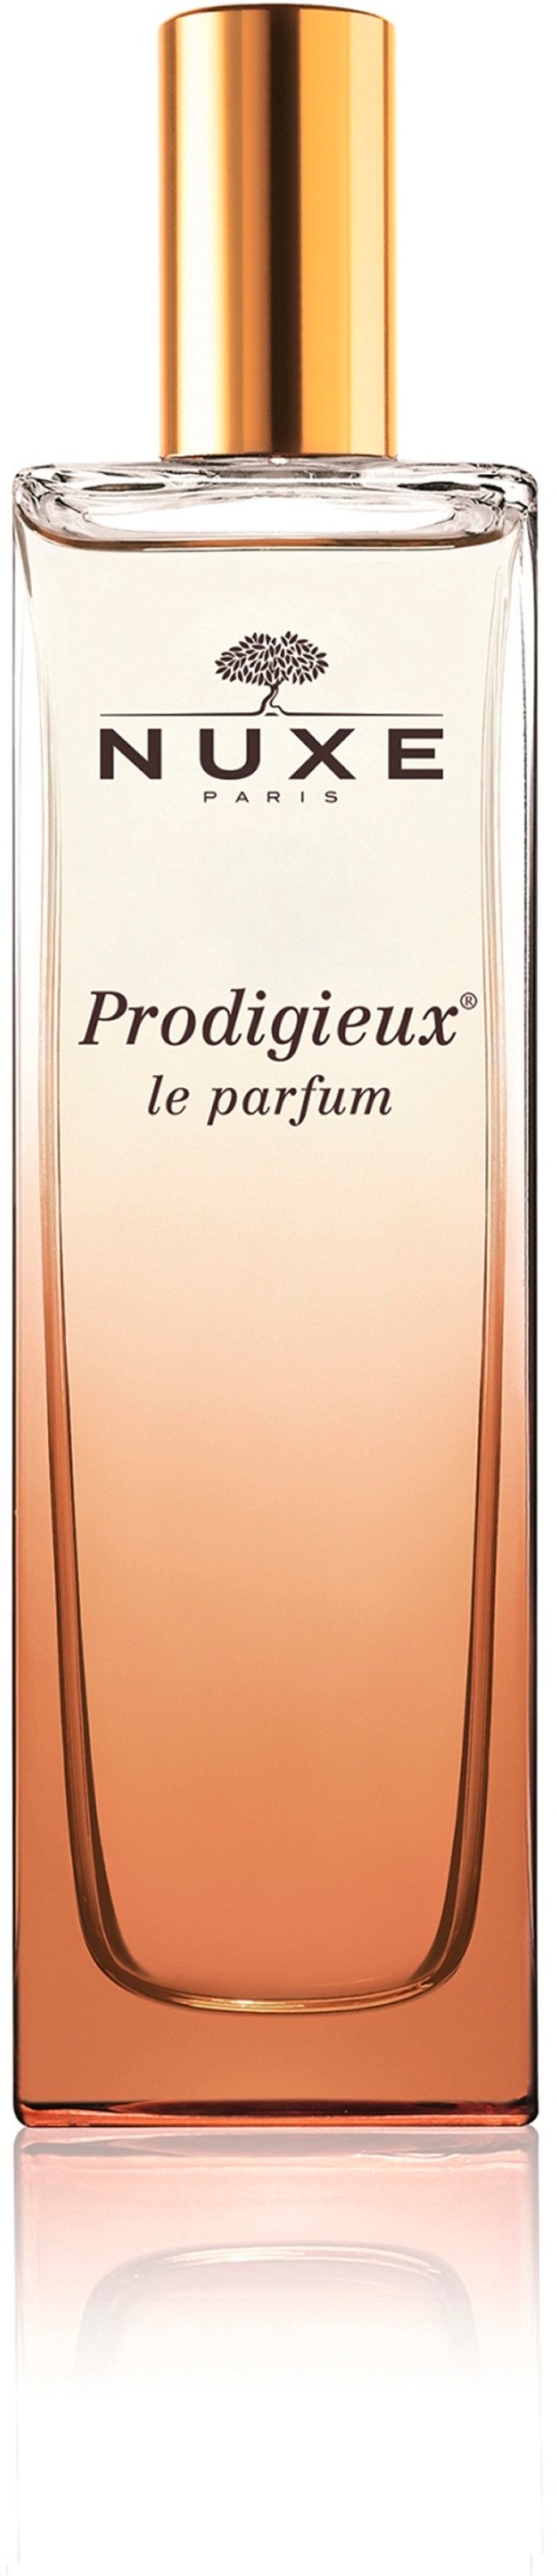 Nuxe Prodigieux Le Parfum EdP Spray 50 ml